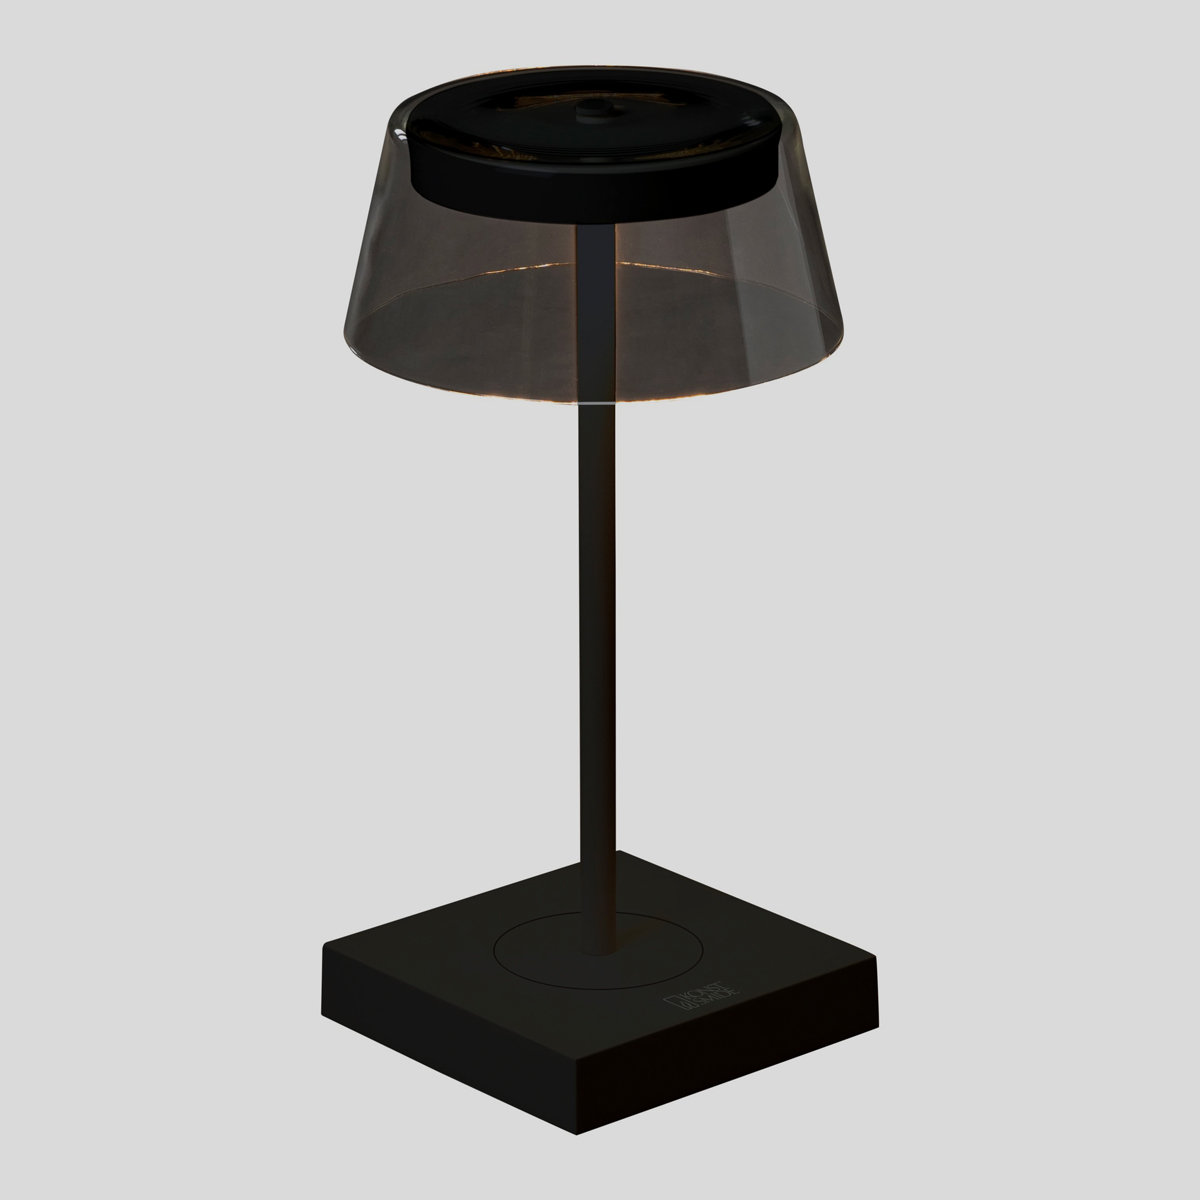 De Konstmide Scilla tafellamp is niet alleen mooi, maar ook nog eens overal neer te zetten. De lamp is namelijk draadloos en werkt op een oplaadbare accu. 